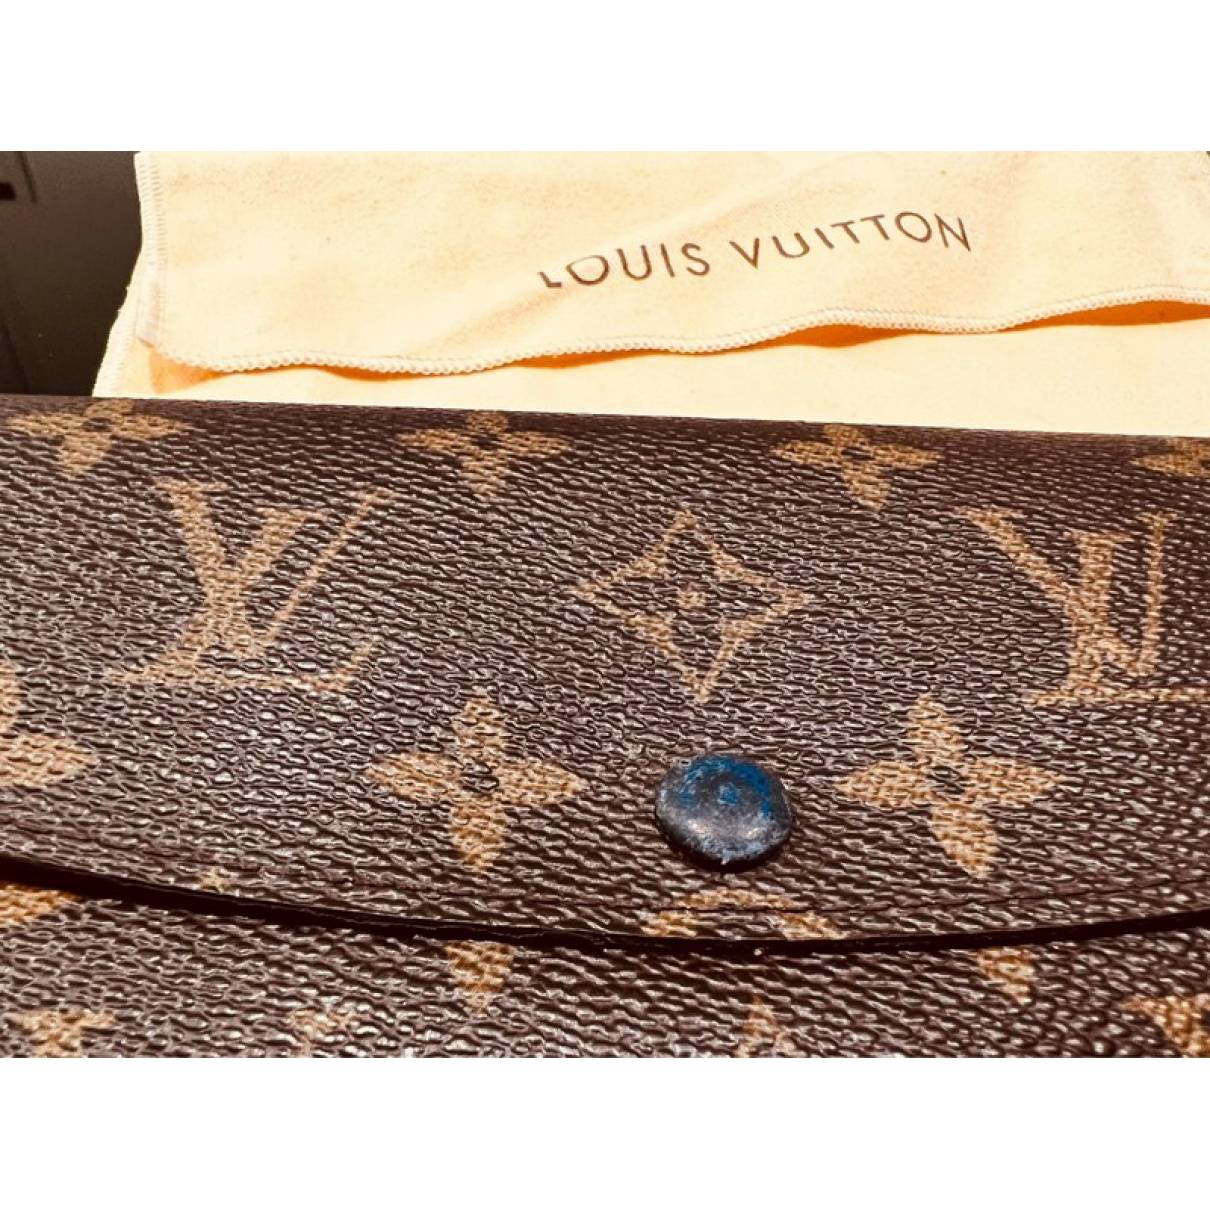 Louis Vuitton - Emilie Wallet - Monogram Canvas - Women - Luxury